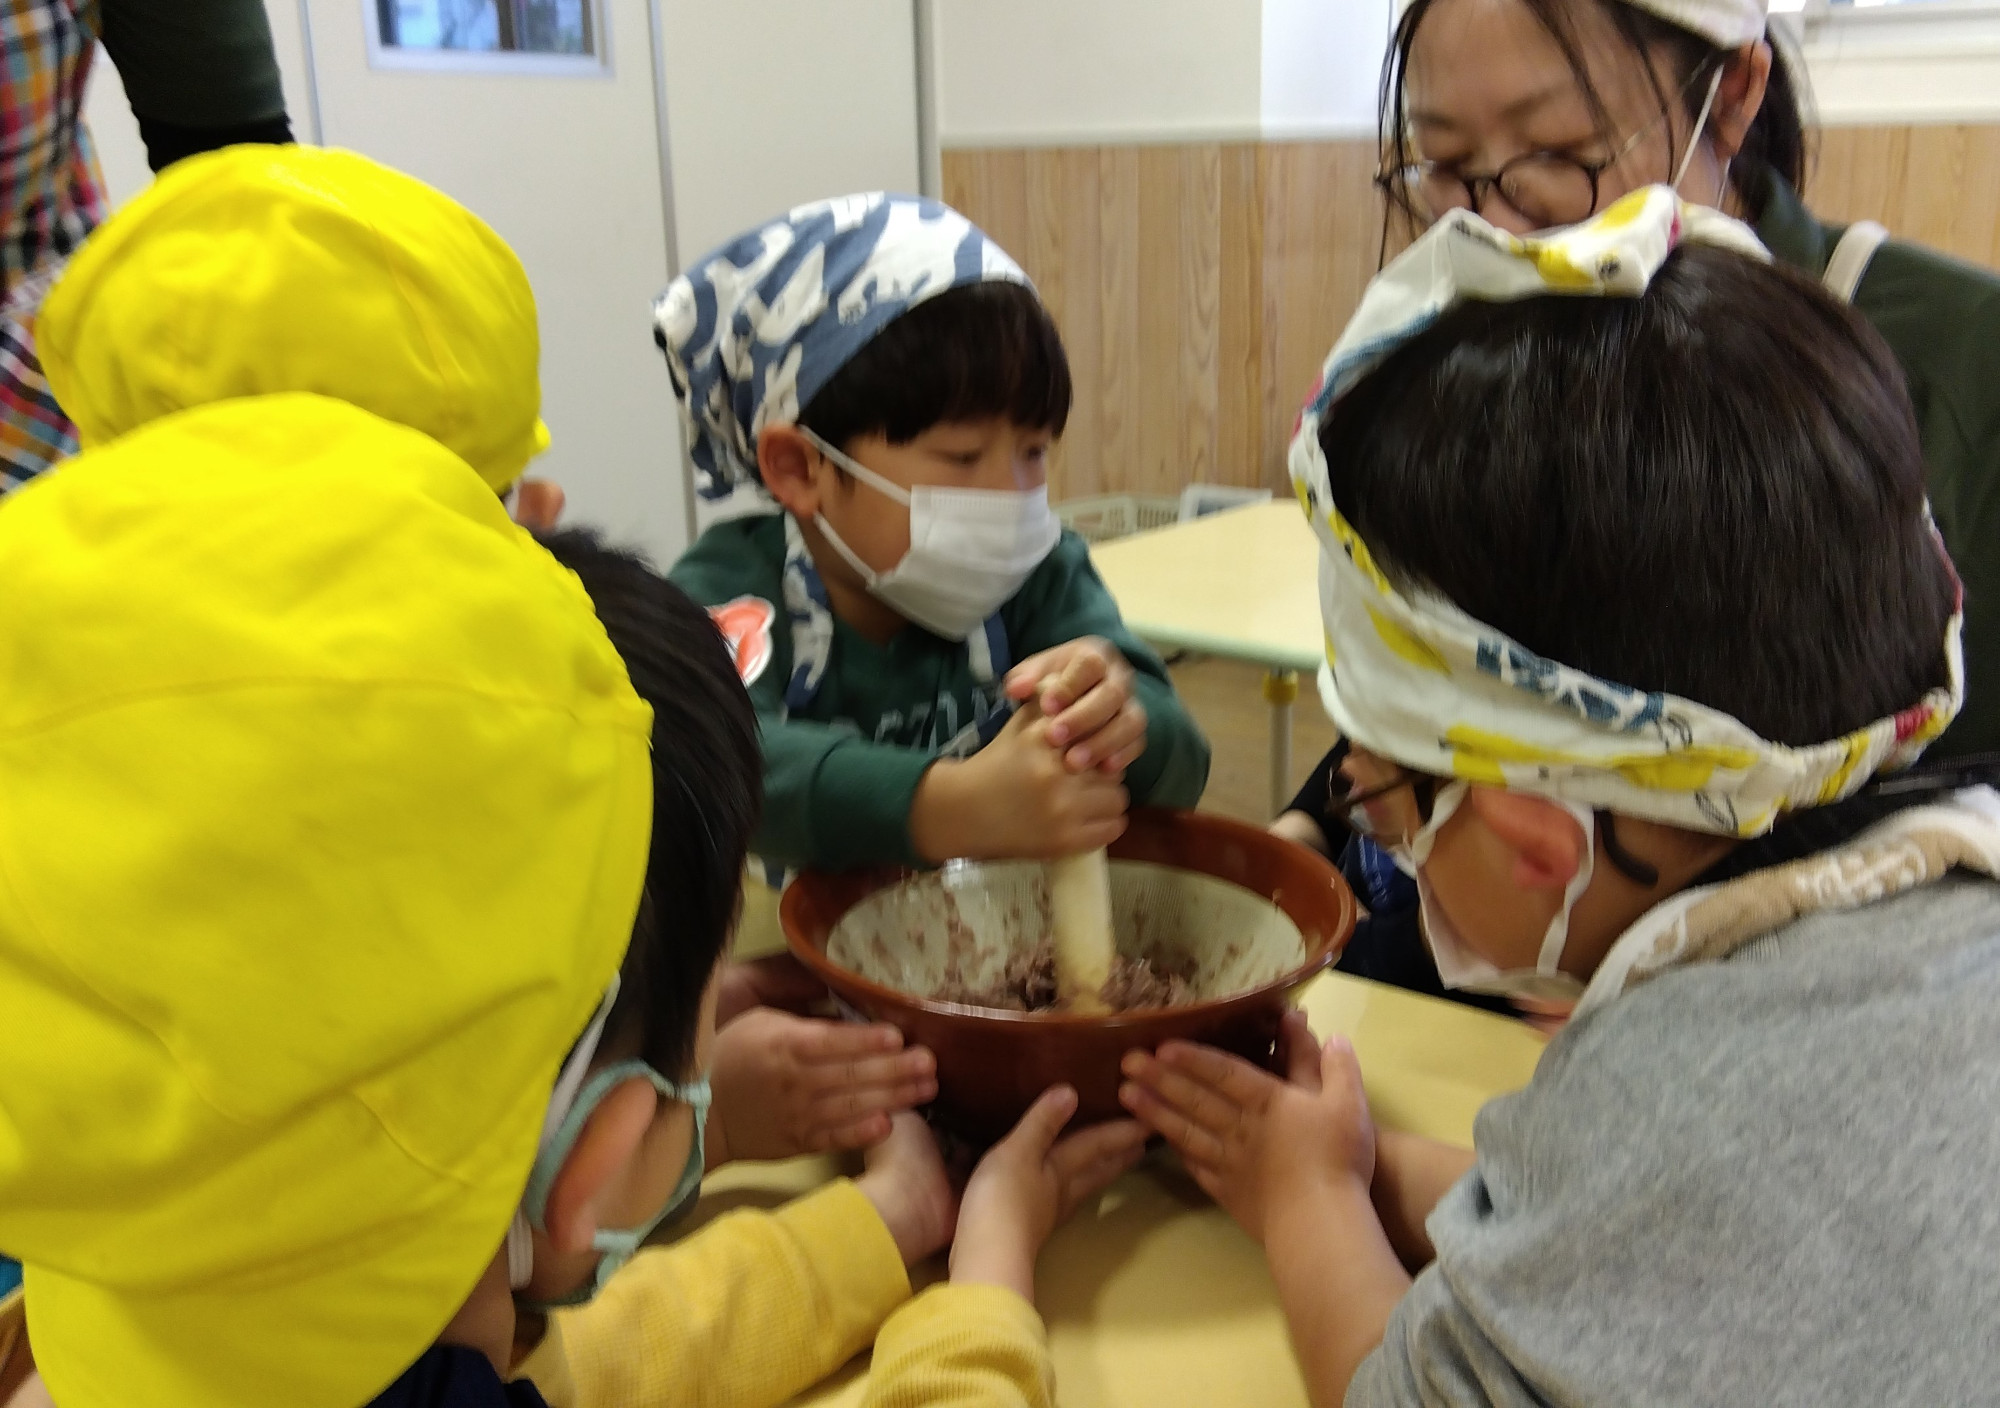 すり鉢で魚をすりつぶす子どもと、すり鉢を押さえる子どもたち